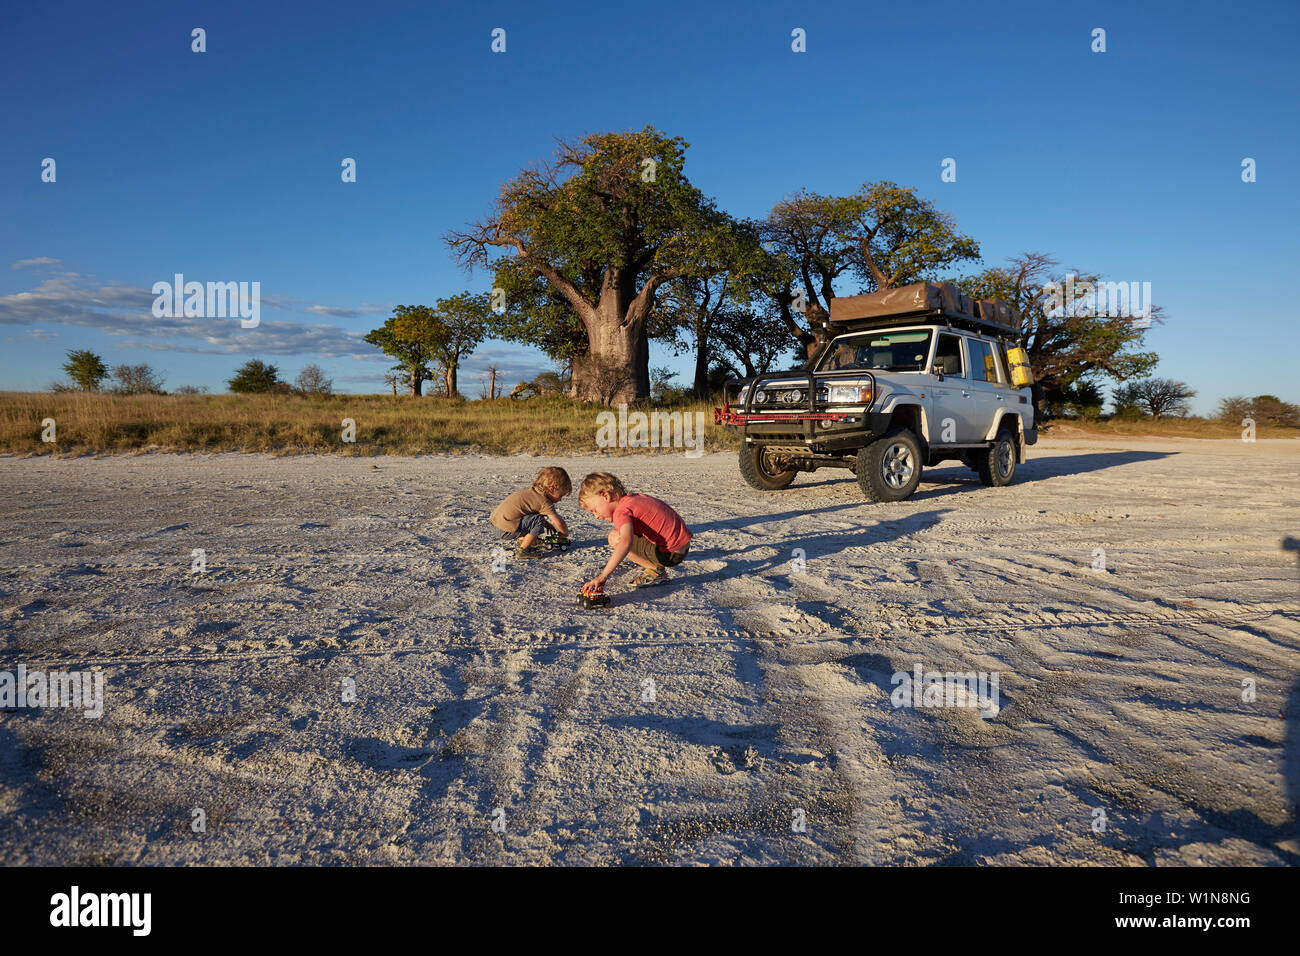 Muchachos jugando en la arena al atardecer, Tutume, Parque Nacional de Nxai Pan, Botswana Foto de stock